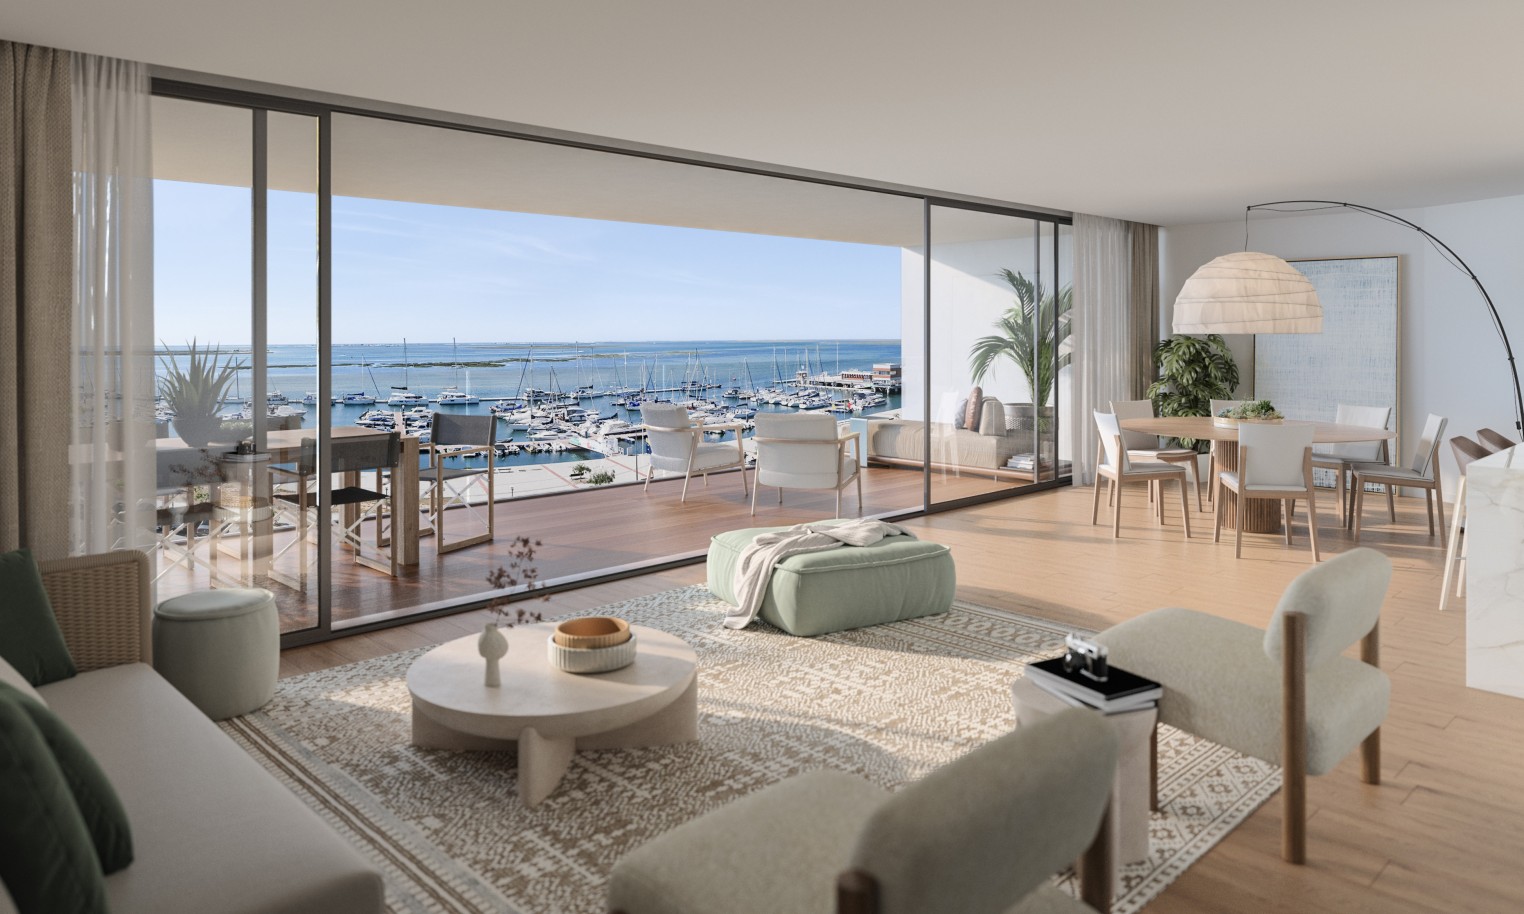 Pisos nuevos con vistas al mar, 1, 2 y 3 dormitorios, en venta en Olhão, Algarve_244313